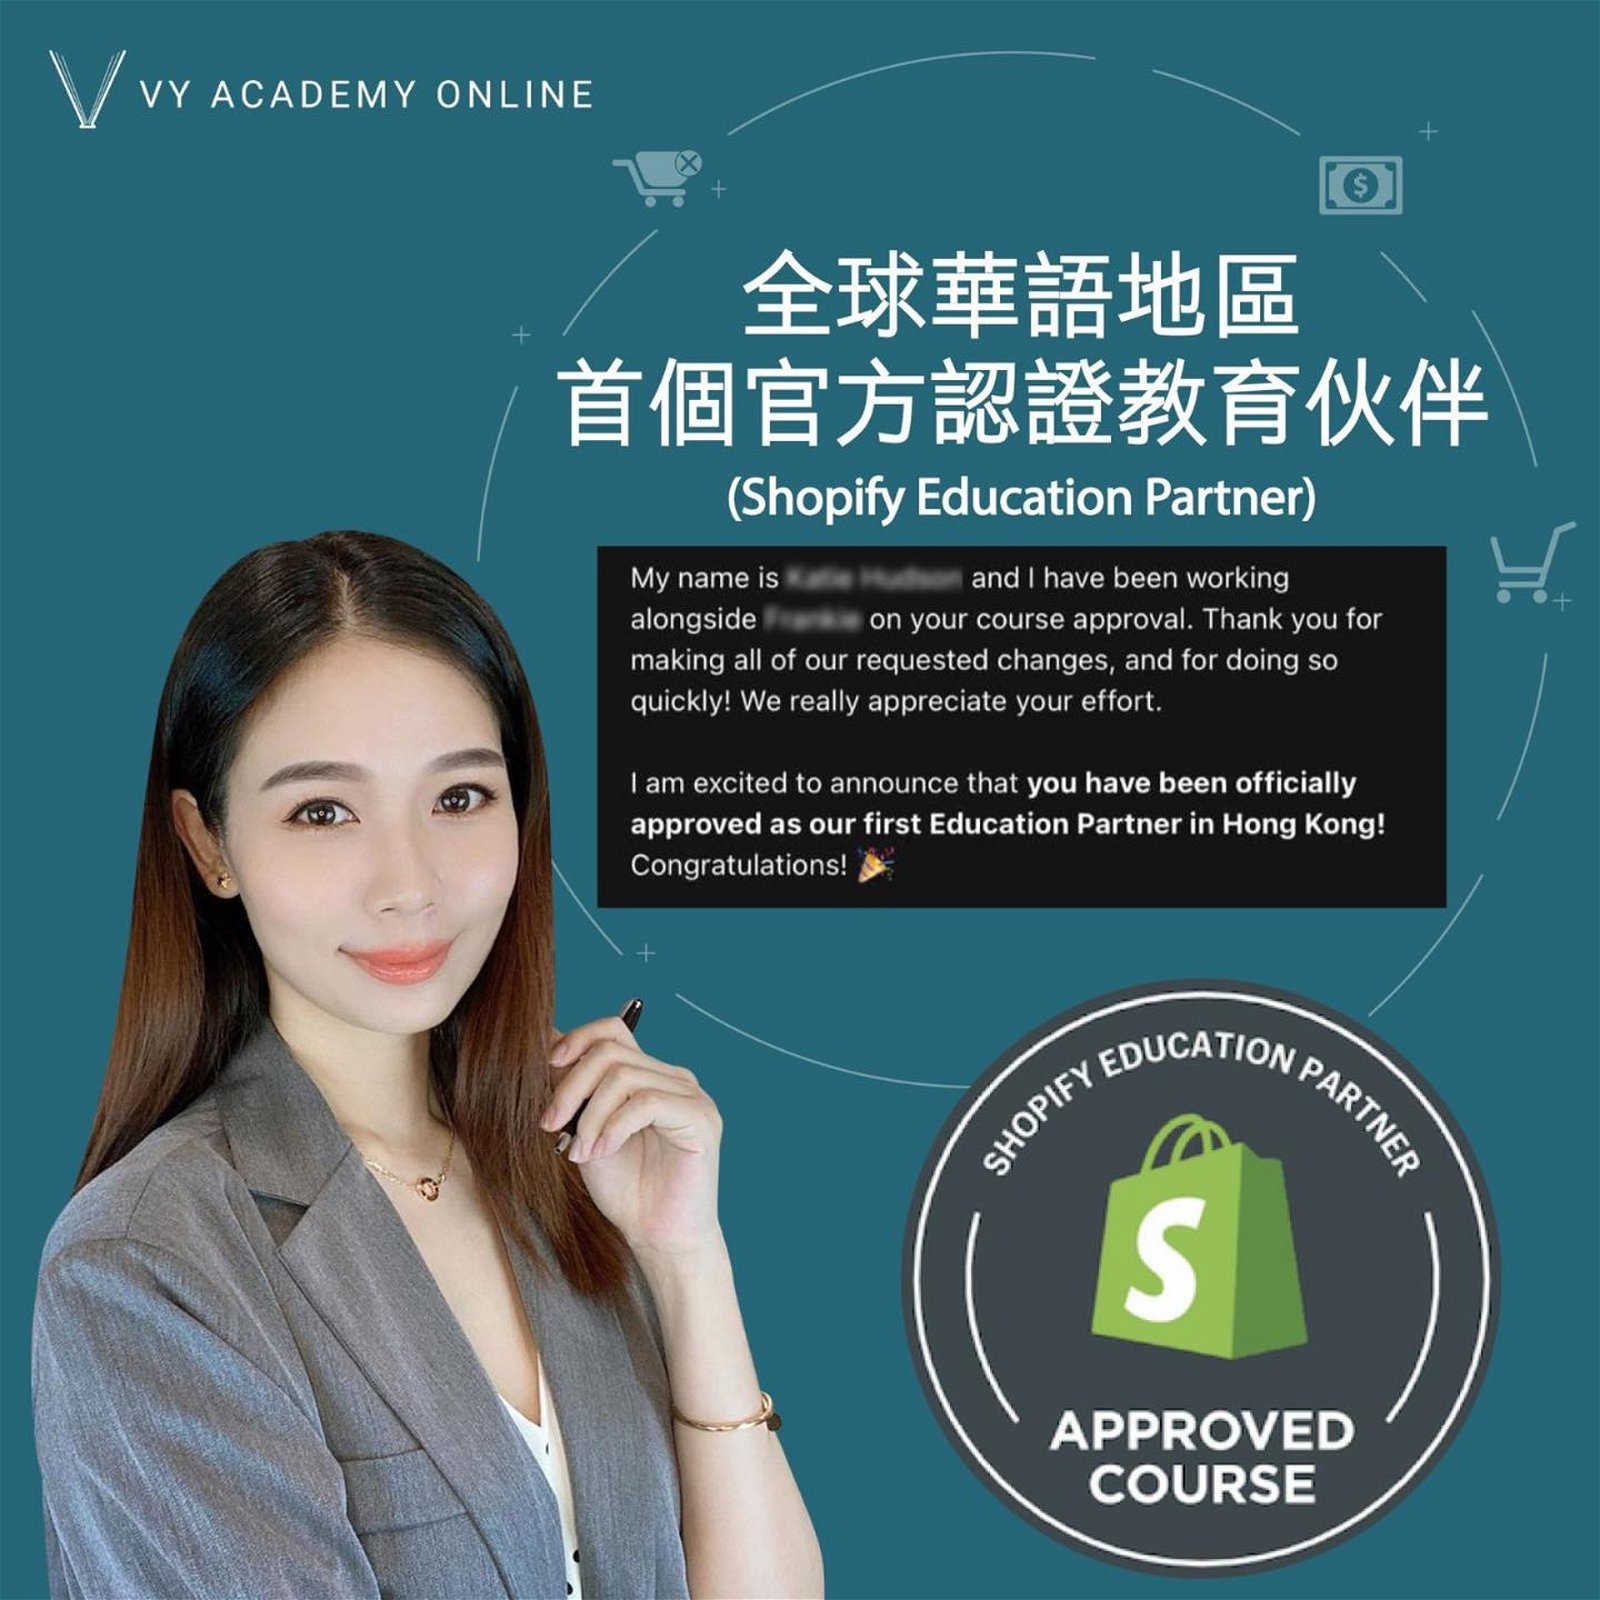 杨秀惠开设的电商课程VY Academy获得认可。